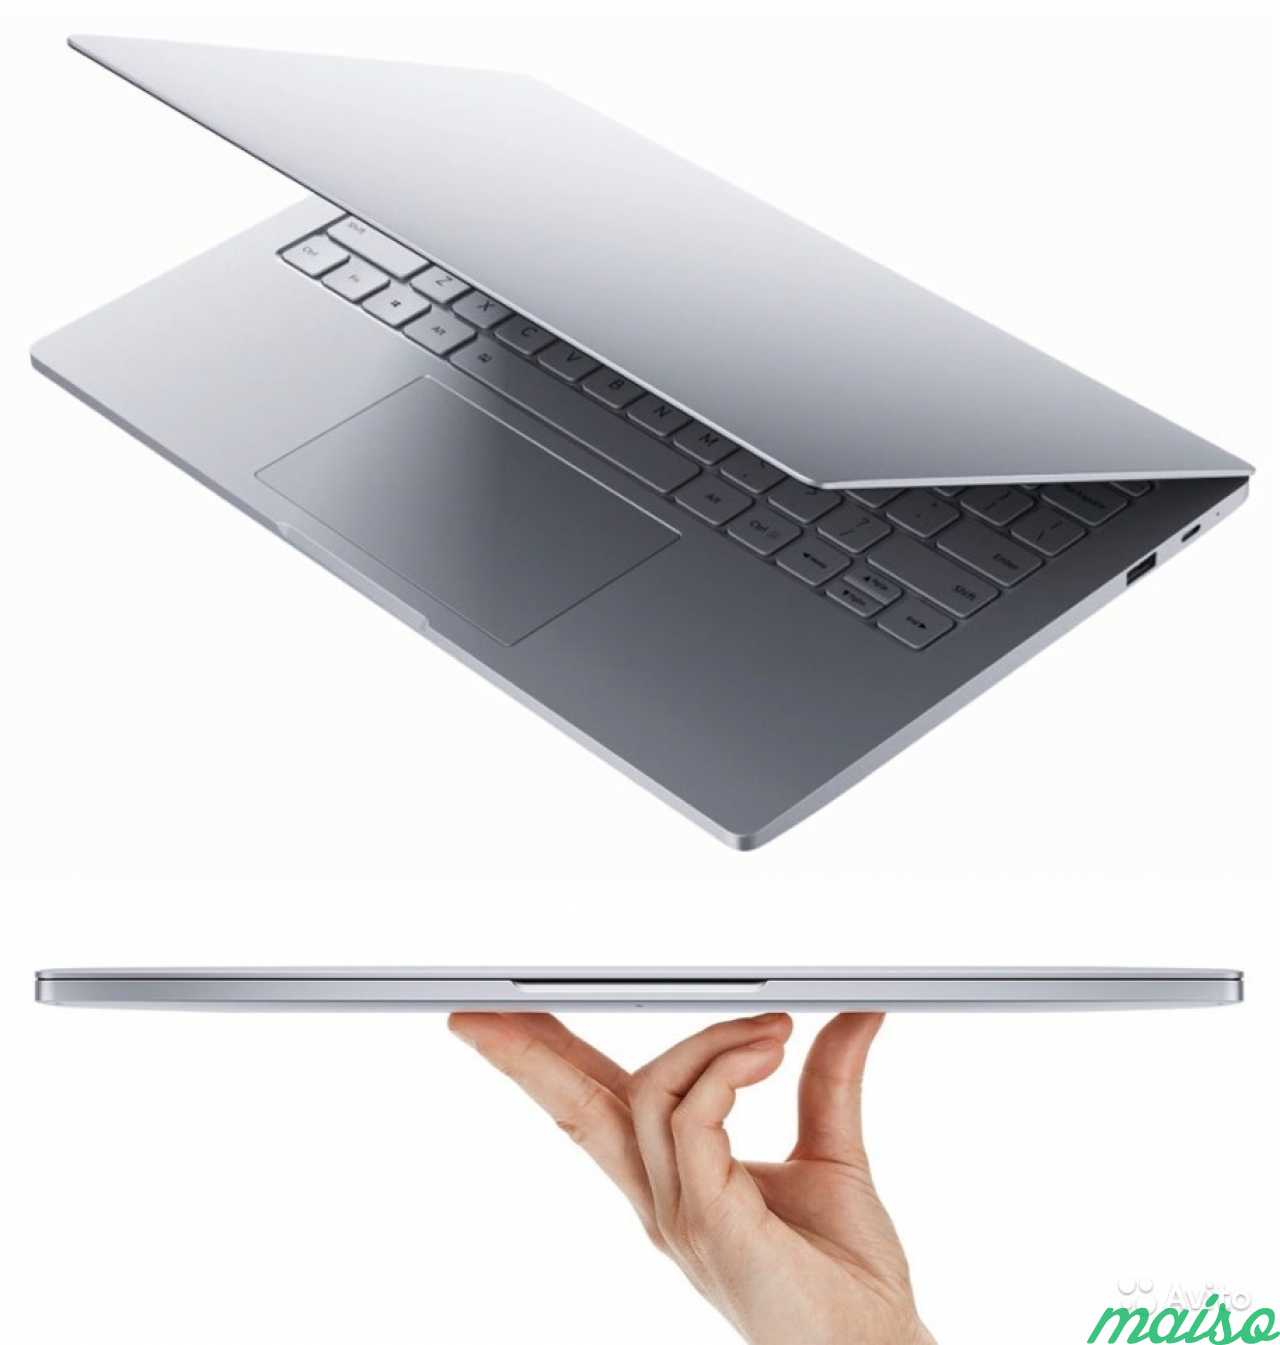 Ноутбук тонкий и легкий. Xiaomi mi Notebook Air 13.3". Xiaomi mi Notebook Air 12.5. Ноутбук Xiaomi mi Notebook Air 13. Ноутбук Xiaomi mi Notebook Air 13.3" (серебристый).